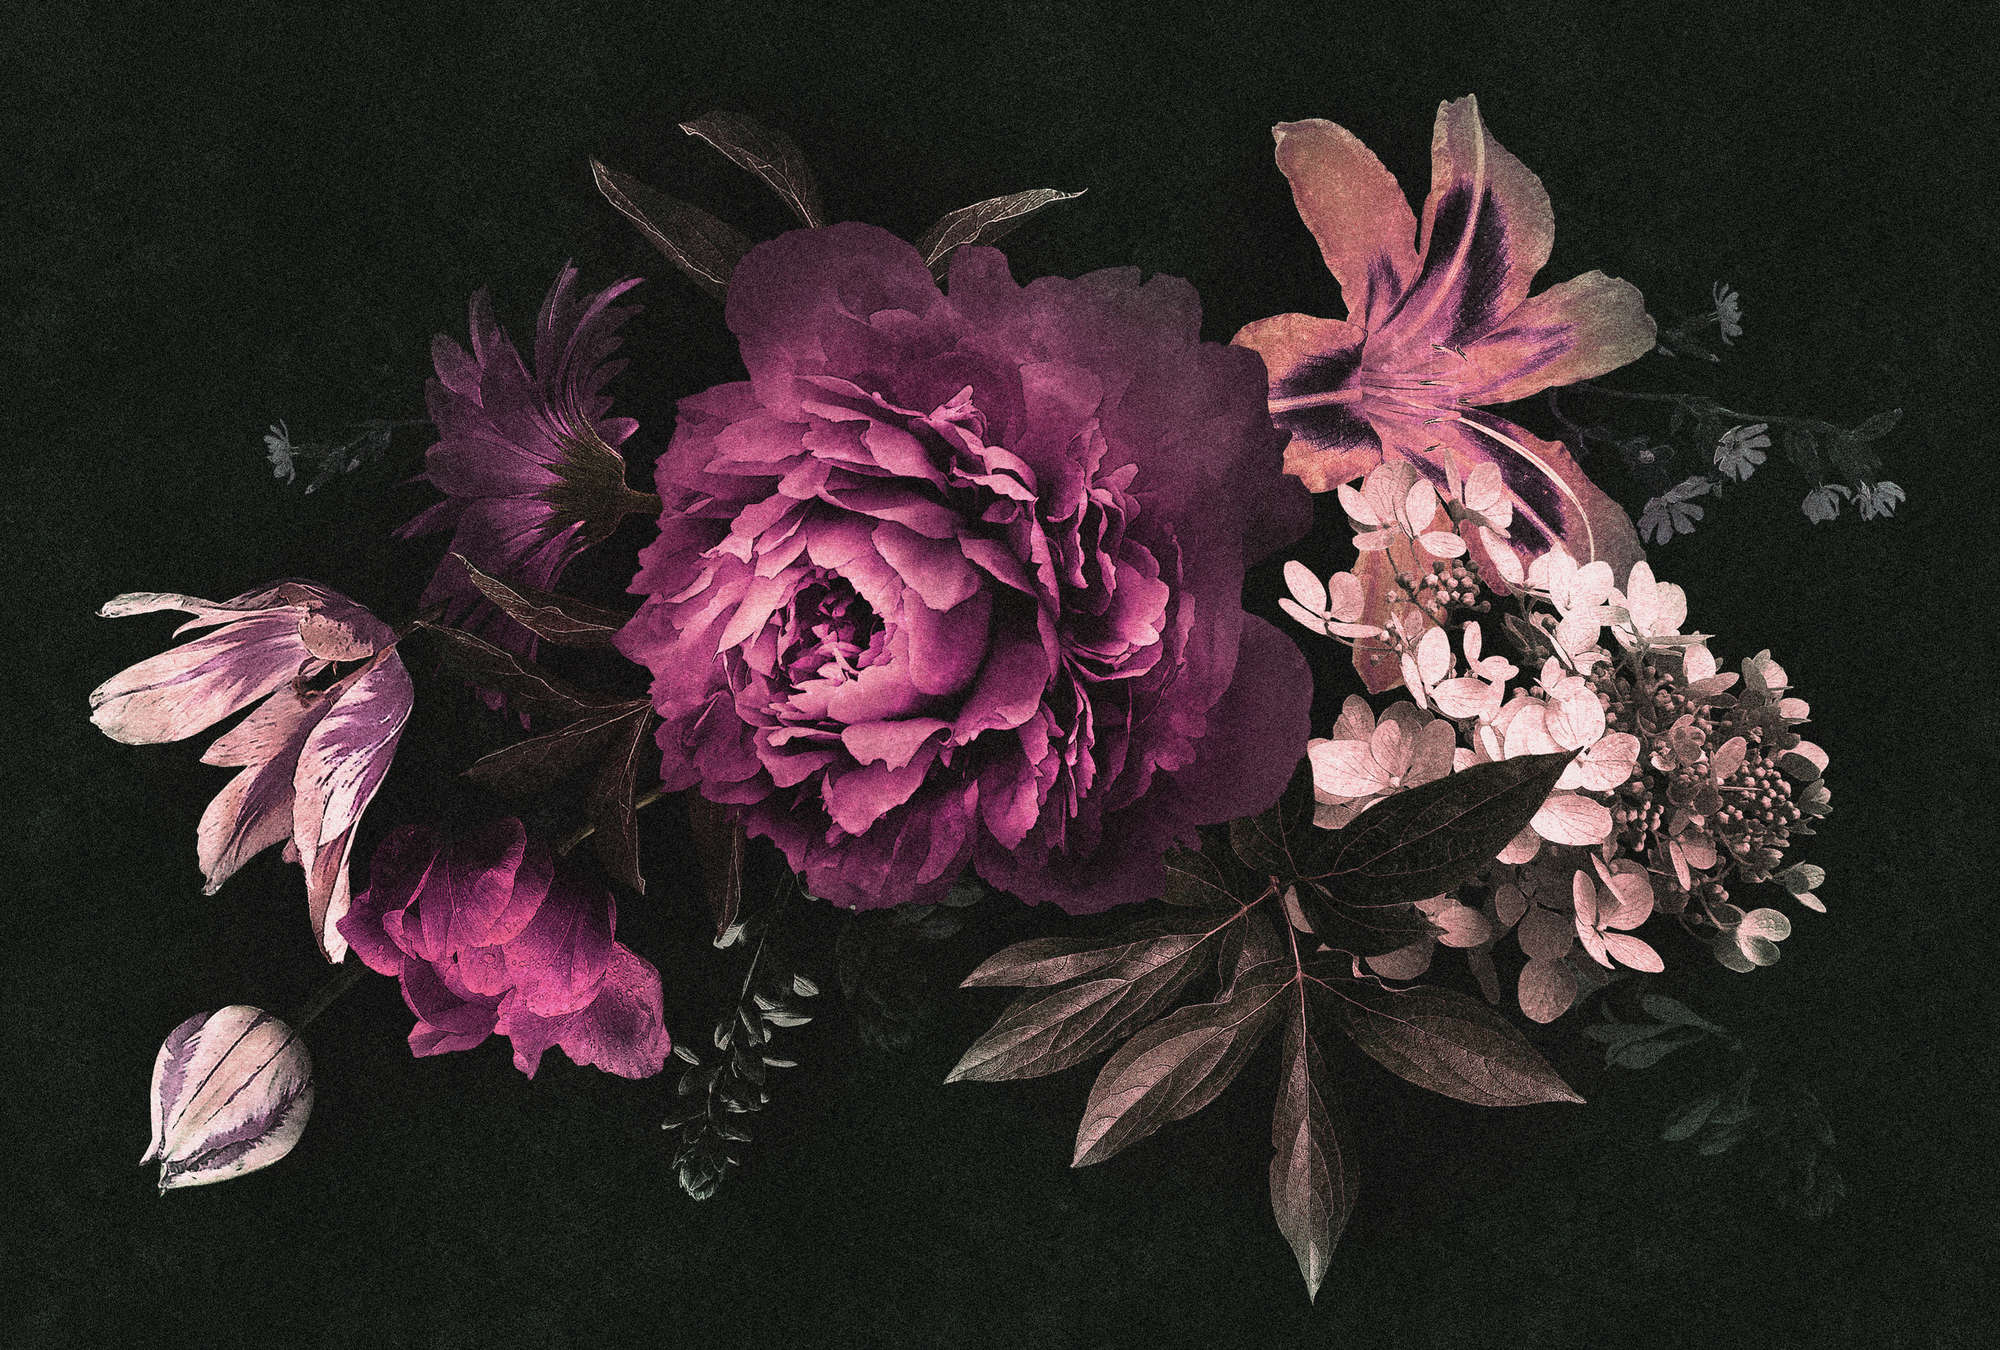             Drama queen 3 - papel pintado ramo de flores romántico - estructura de cartón - rosa, negro | vellón liso nacarado
        